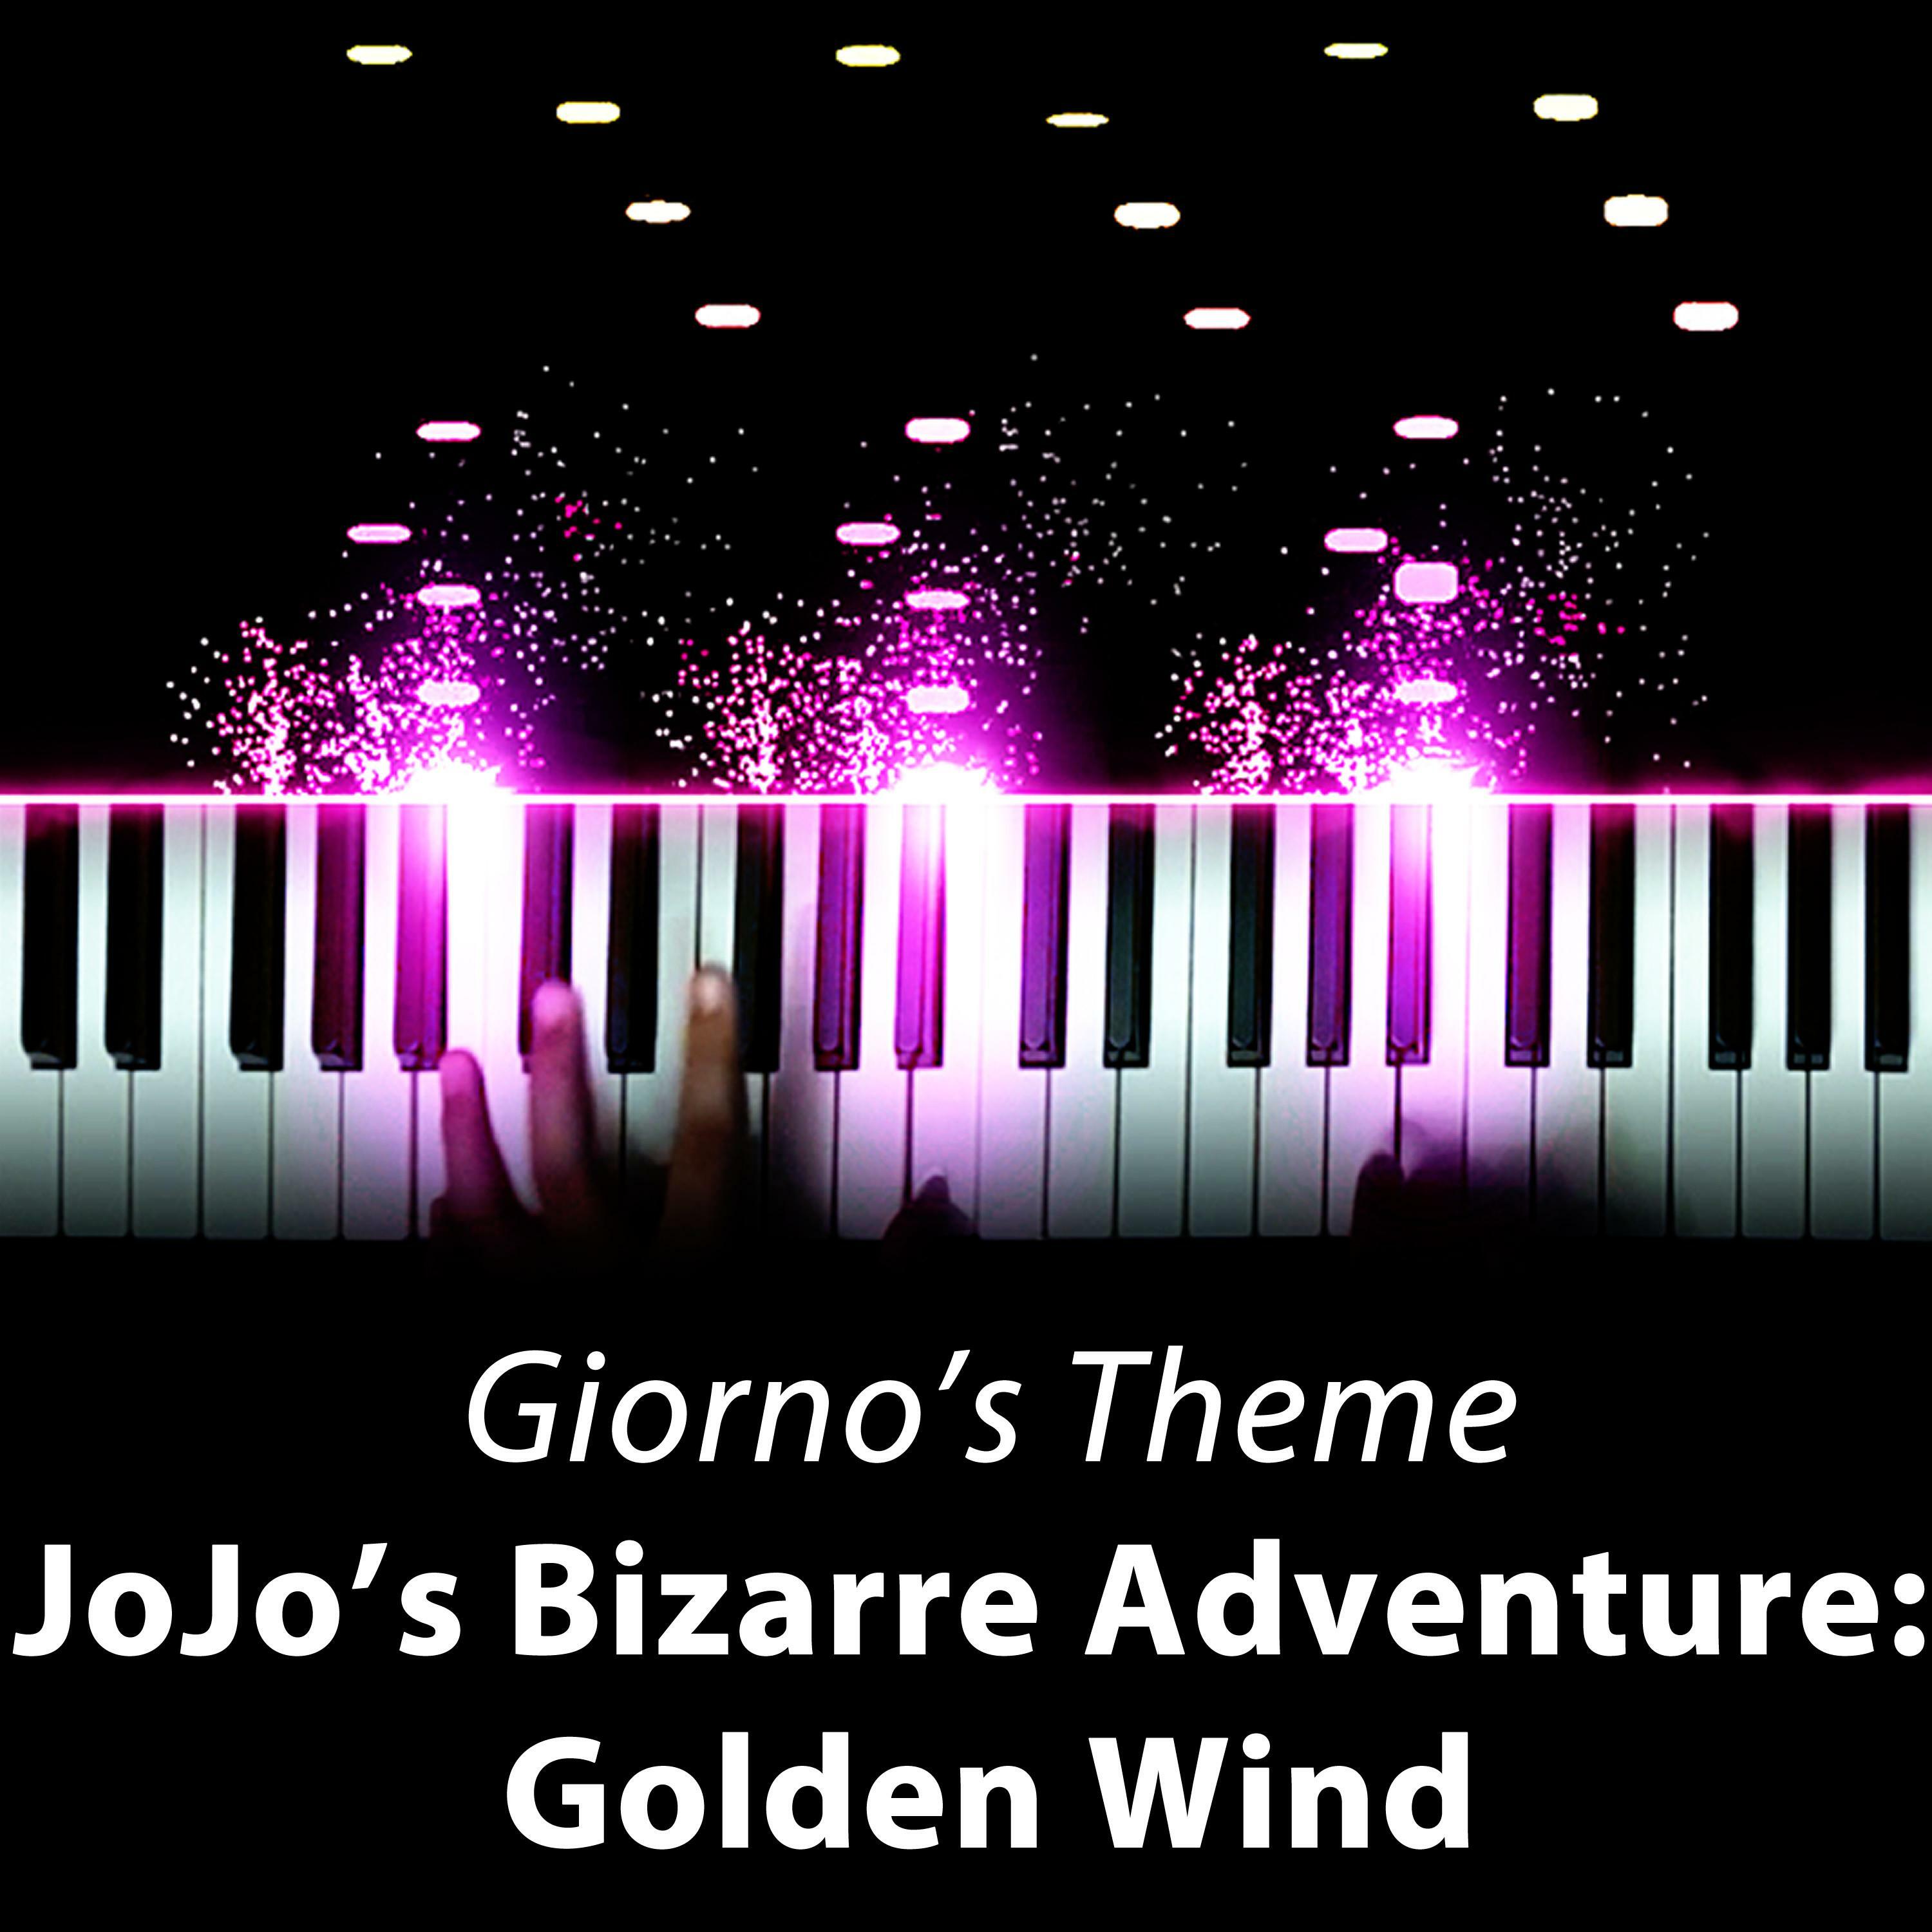 Listen Free To Fonzi M Giorno S Theme Il Vento D Oro Jojo S Bizarre Adventure Golden Wind Radio On Iheartradio Iheartradio - giorno's theme roblox id code